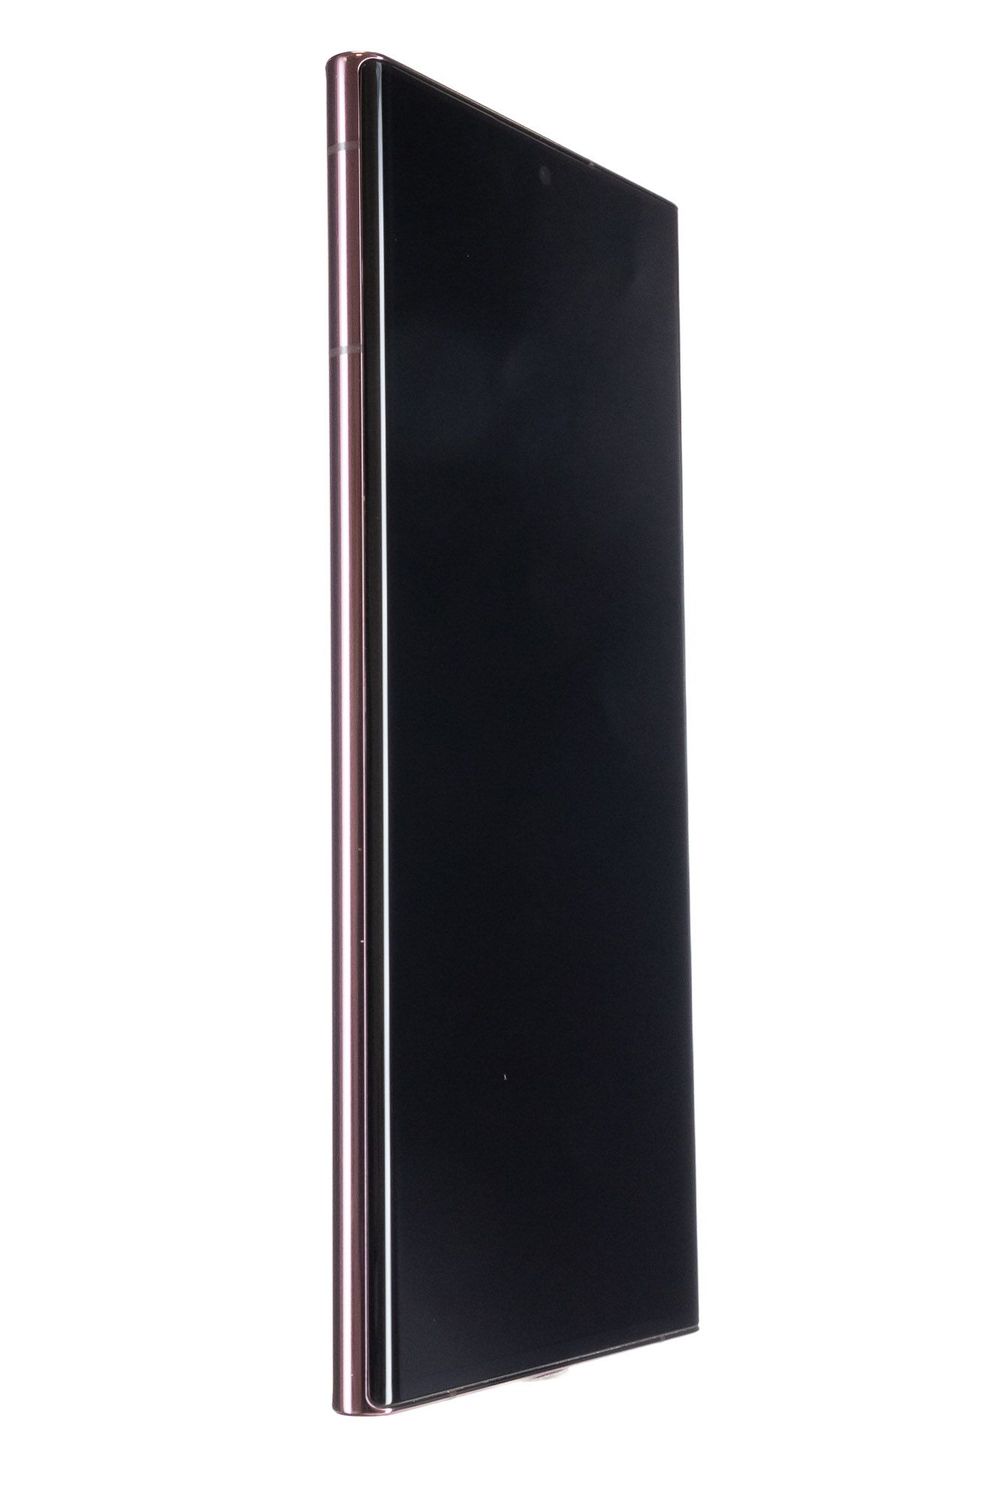 Telefon mobil Samsung Galaxy S22 Ultra 5G, Burgundy, 256 GB, Bun